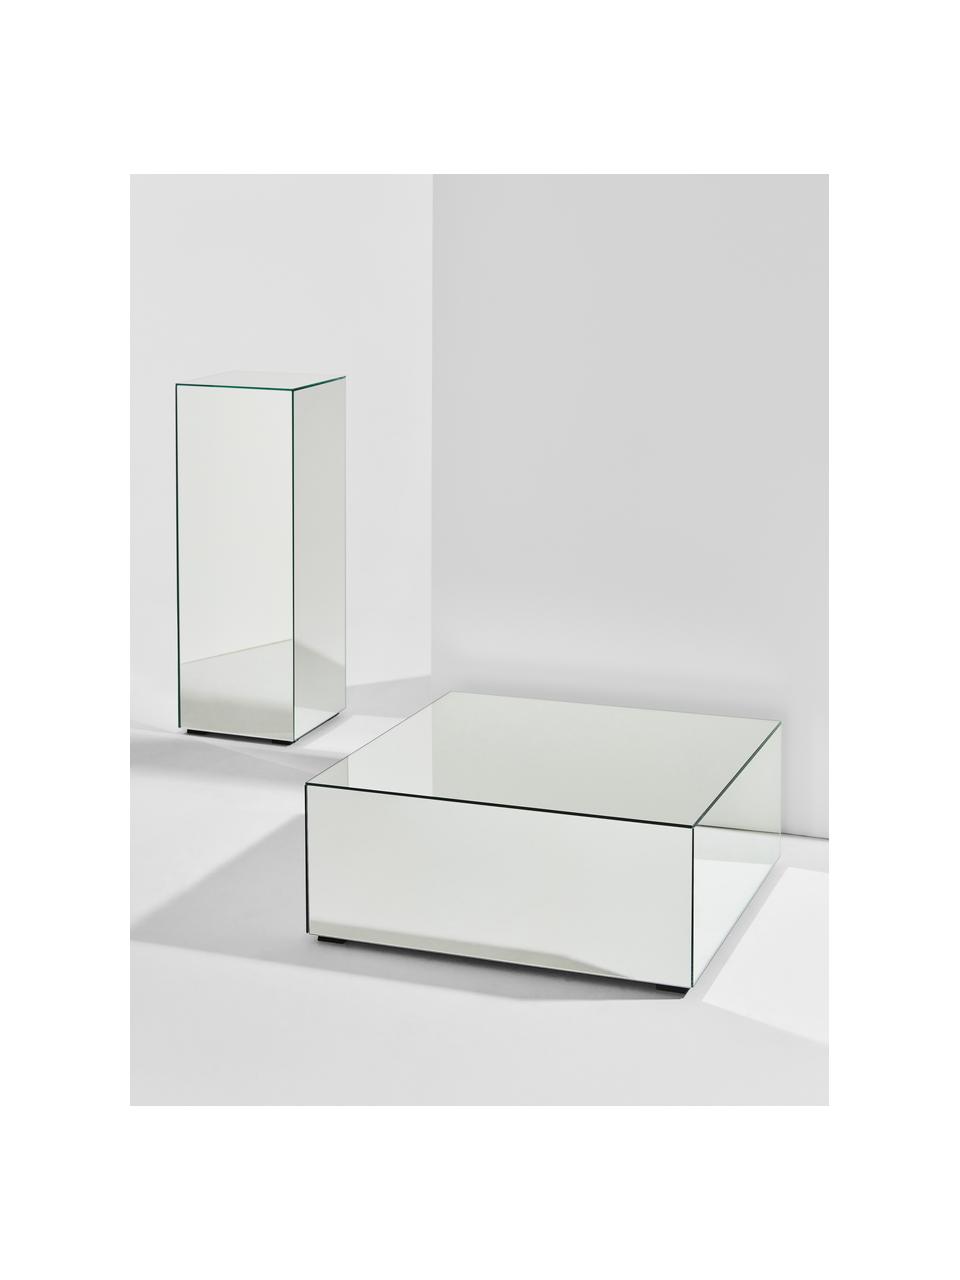 Socle à surface réfléchissante Pop, MDF (panneau en fibres de bois à densité moyenne), verre miroir, Verre miroir, larg. 27 x haut. 75 cm